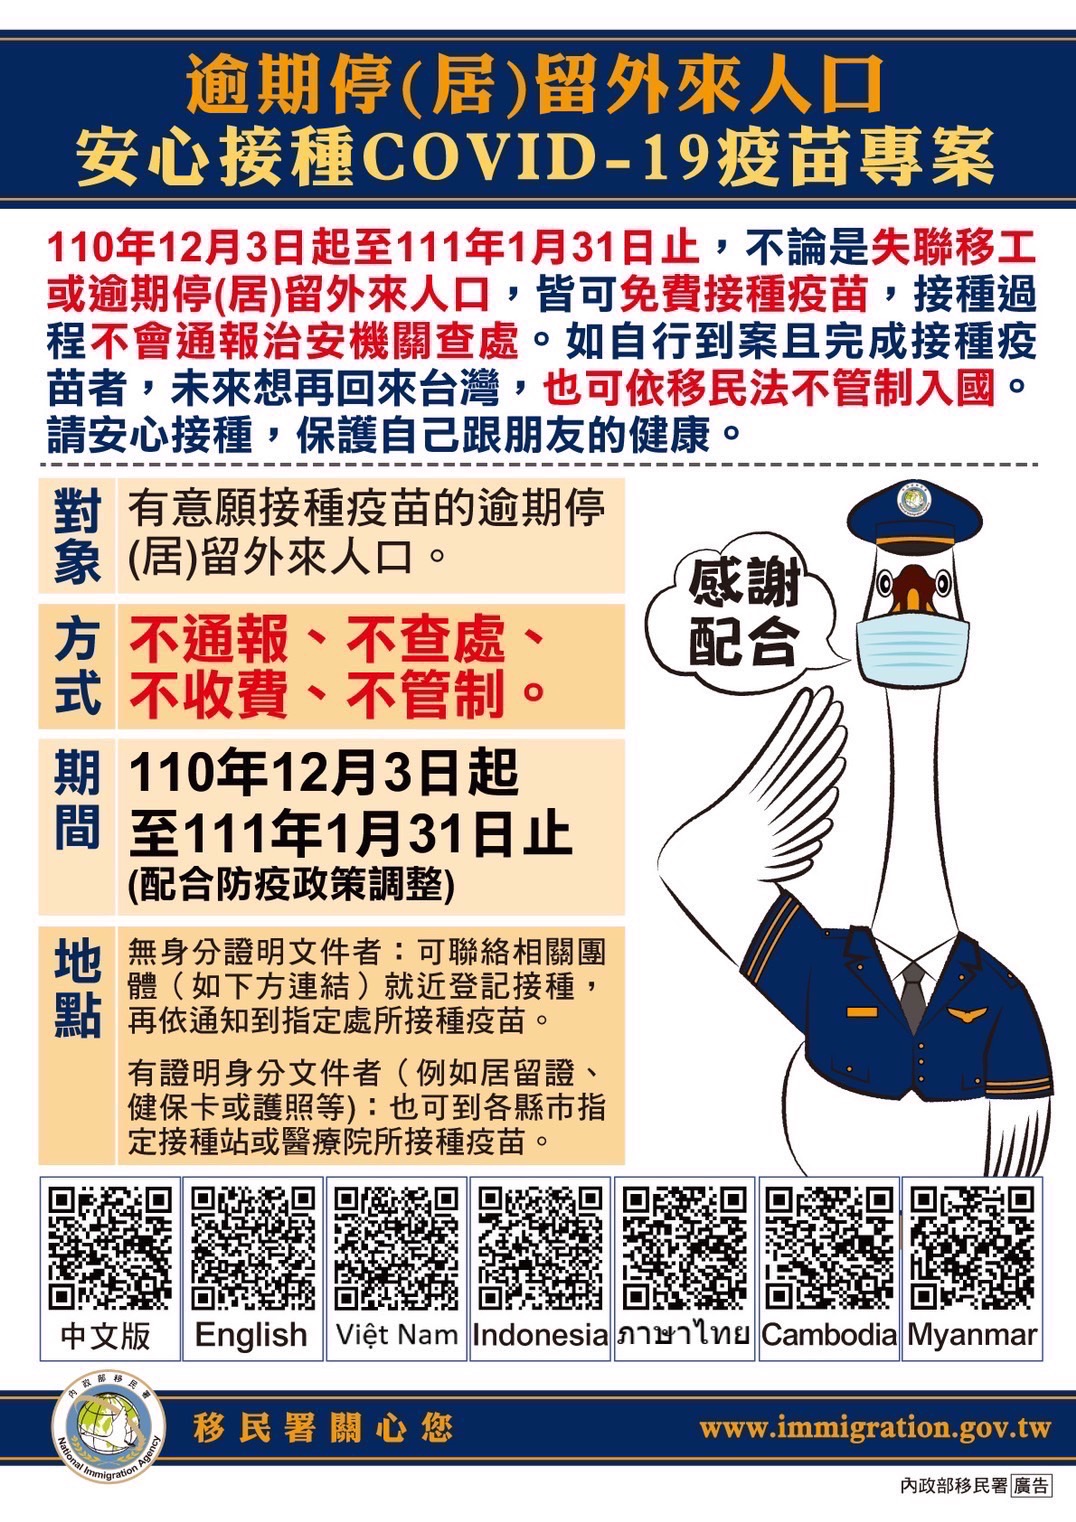 Sở Di dân Đài Loan triển khai chuyên án “Người nước ngoài an tâm tiêm chủng vắc-xin ngừa COVID-19” với tiêu chí: không thông báo, không điều tra, không thu phí, không quản chế. (Nguồn ảnh: Đội Đặc nhiệm thành phố Cao Hùng)